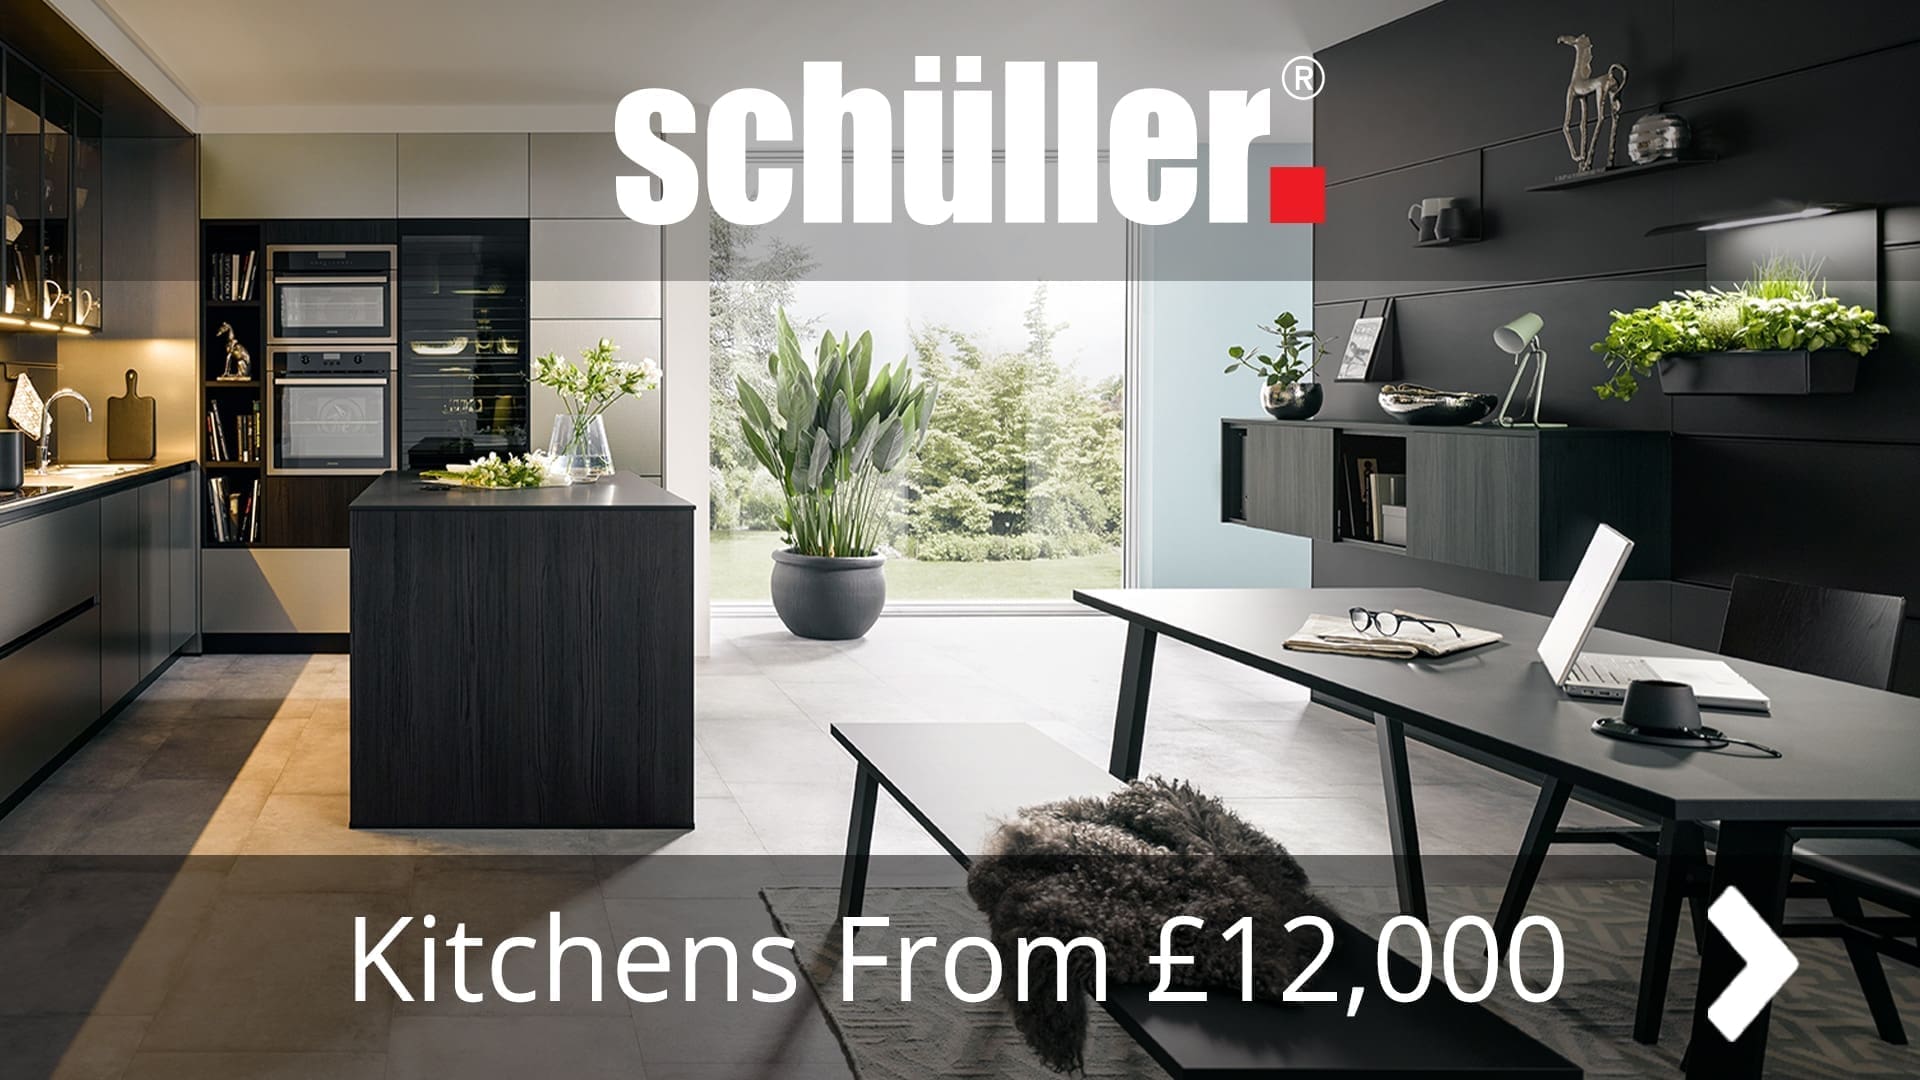 schuller german kitchens cardiff - schuller kitchens 003